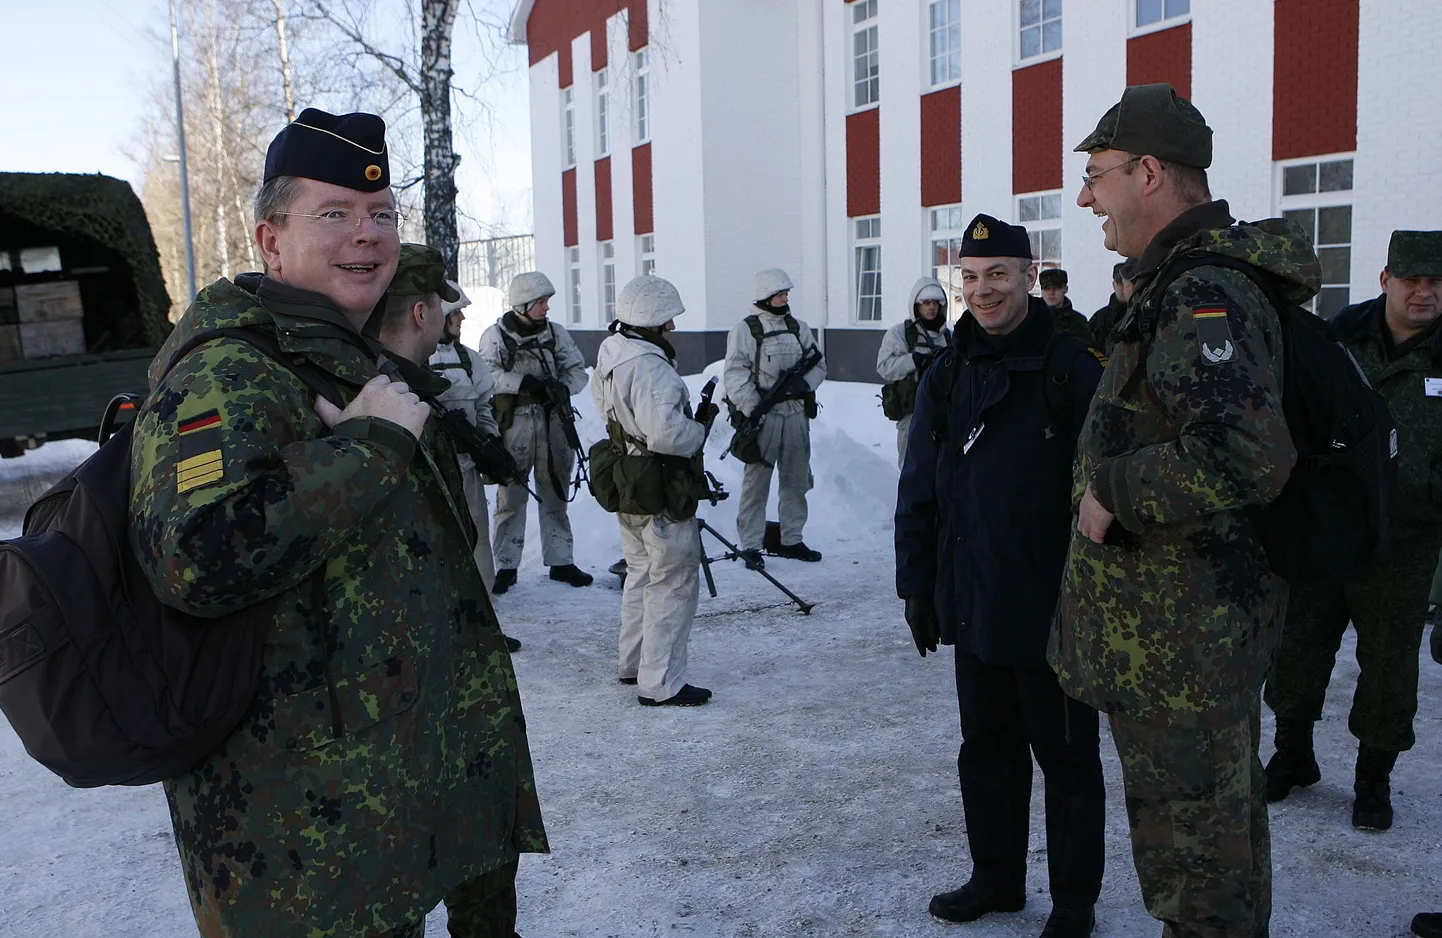 Vaatlejate delegatsiooni kuulusid ka Saksa ohvitserid.